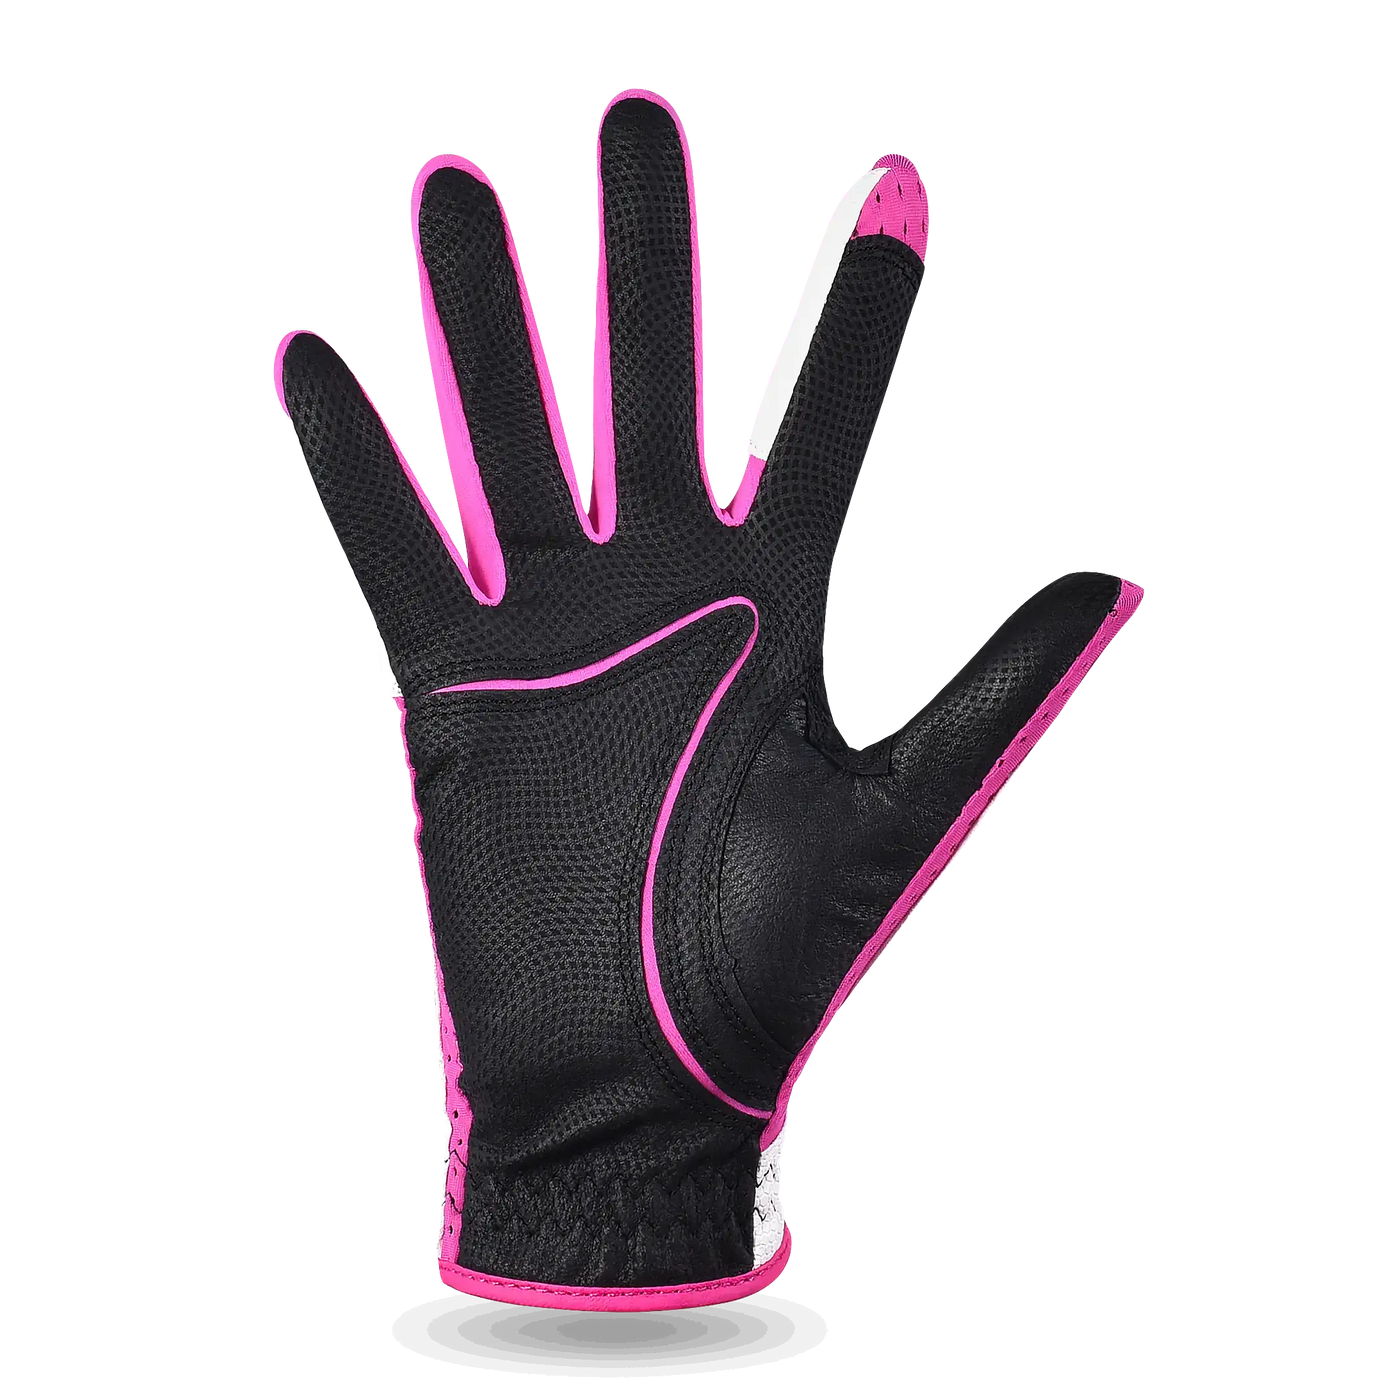 Selkirk Attaktix Premium Leather Glove